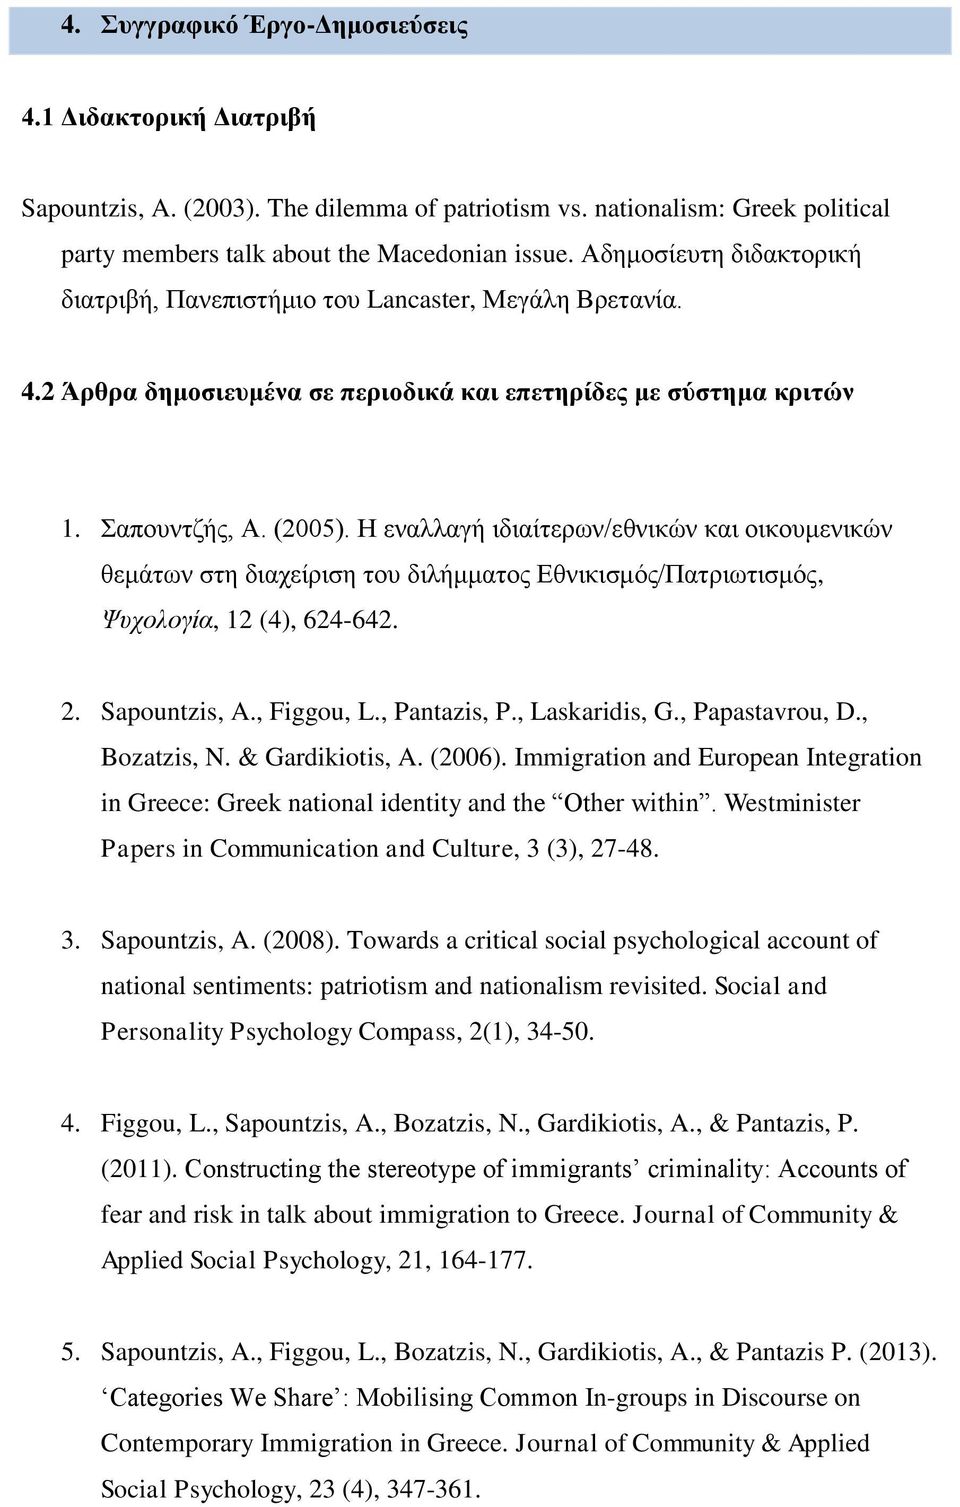 Η εναλλαγή ιδιαίτερων/εθνικών και οικουμενικών θεμάτων στη διαχείριση του διλήμματος Εθνικισμός/Πατριωτισμός, Ψυχολογία, 12 (4), 624-642. 2. Sapountzis, A., Figgou, L., Pantazis, P., Laskaridis, G.